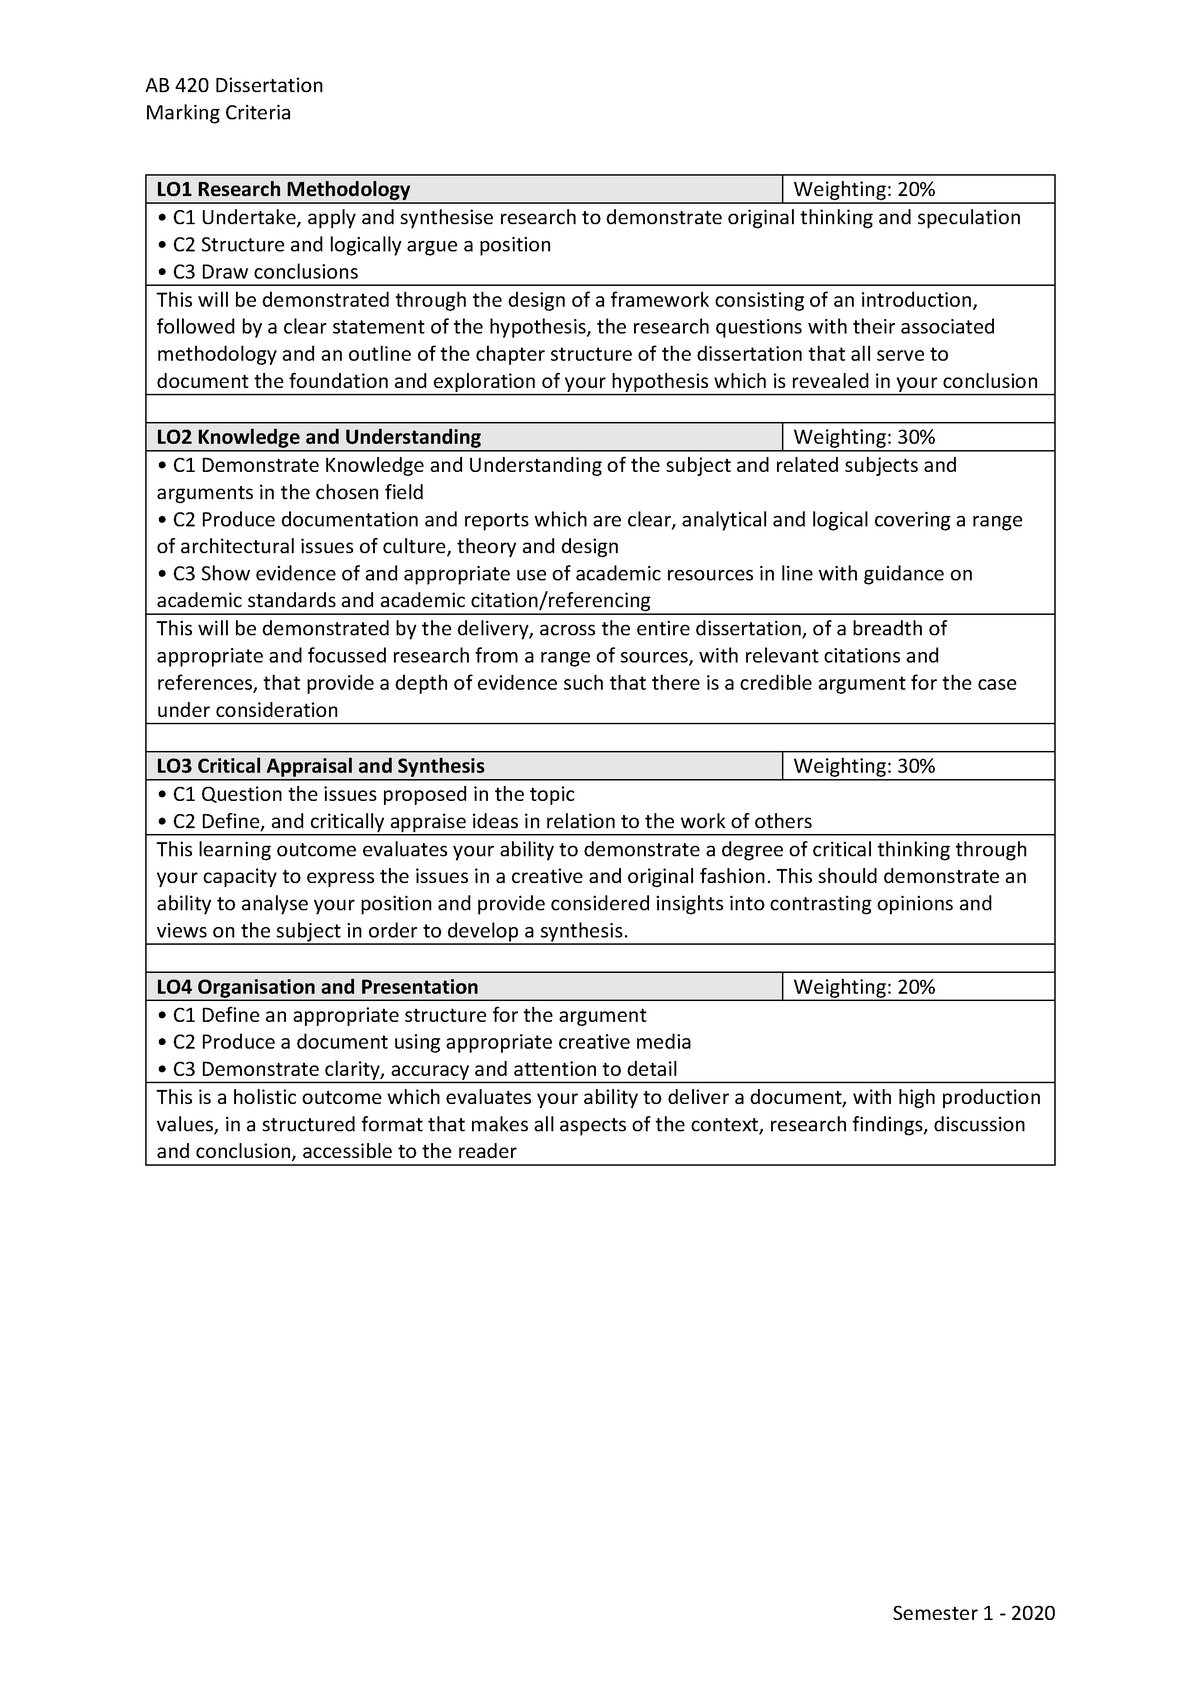 msc dissertation marking criteria